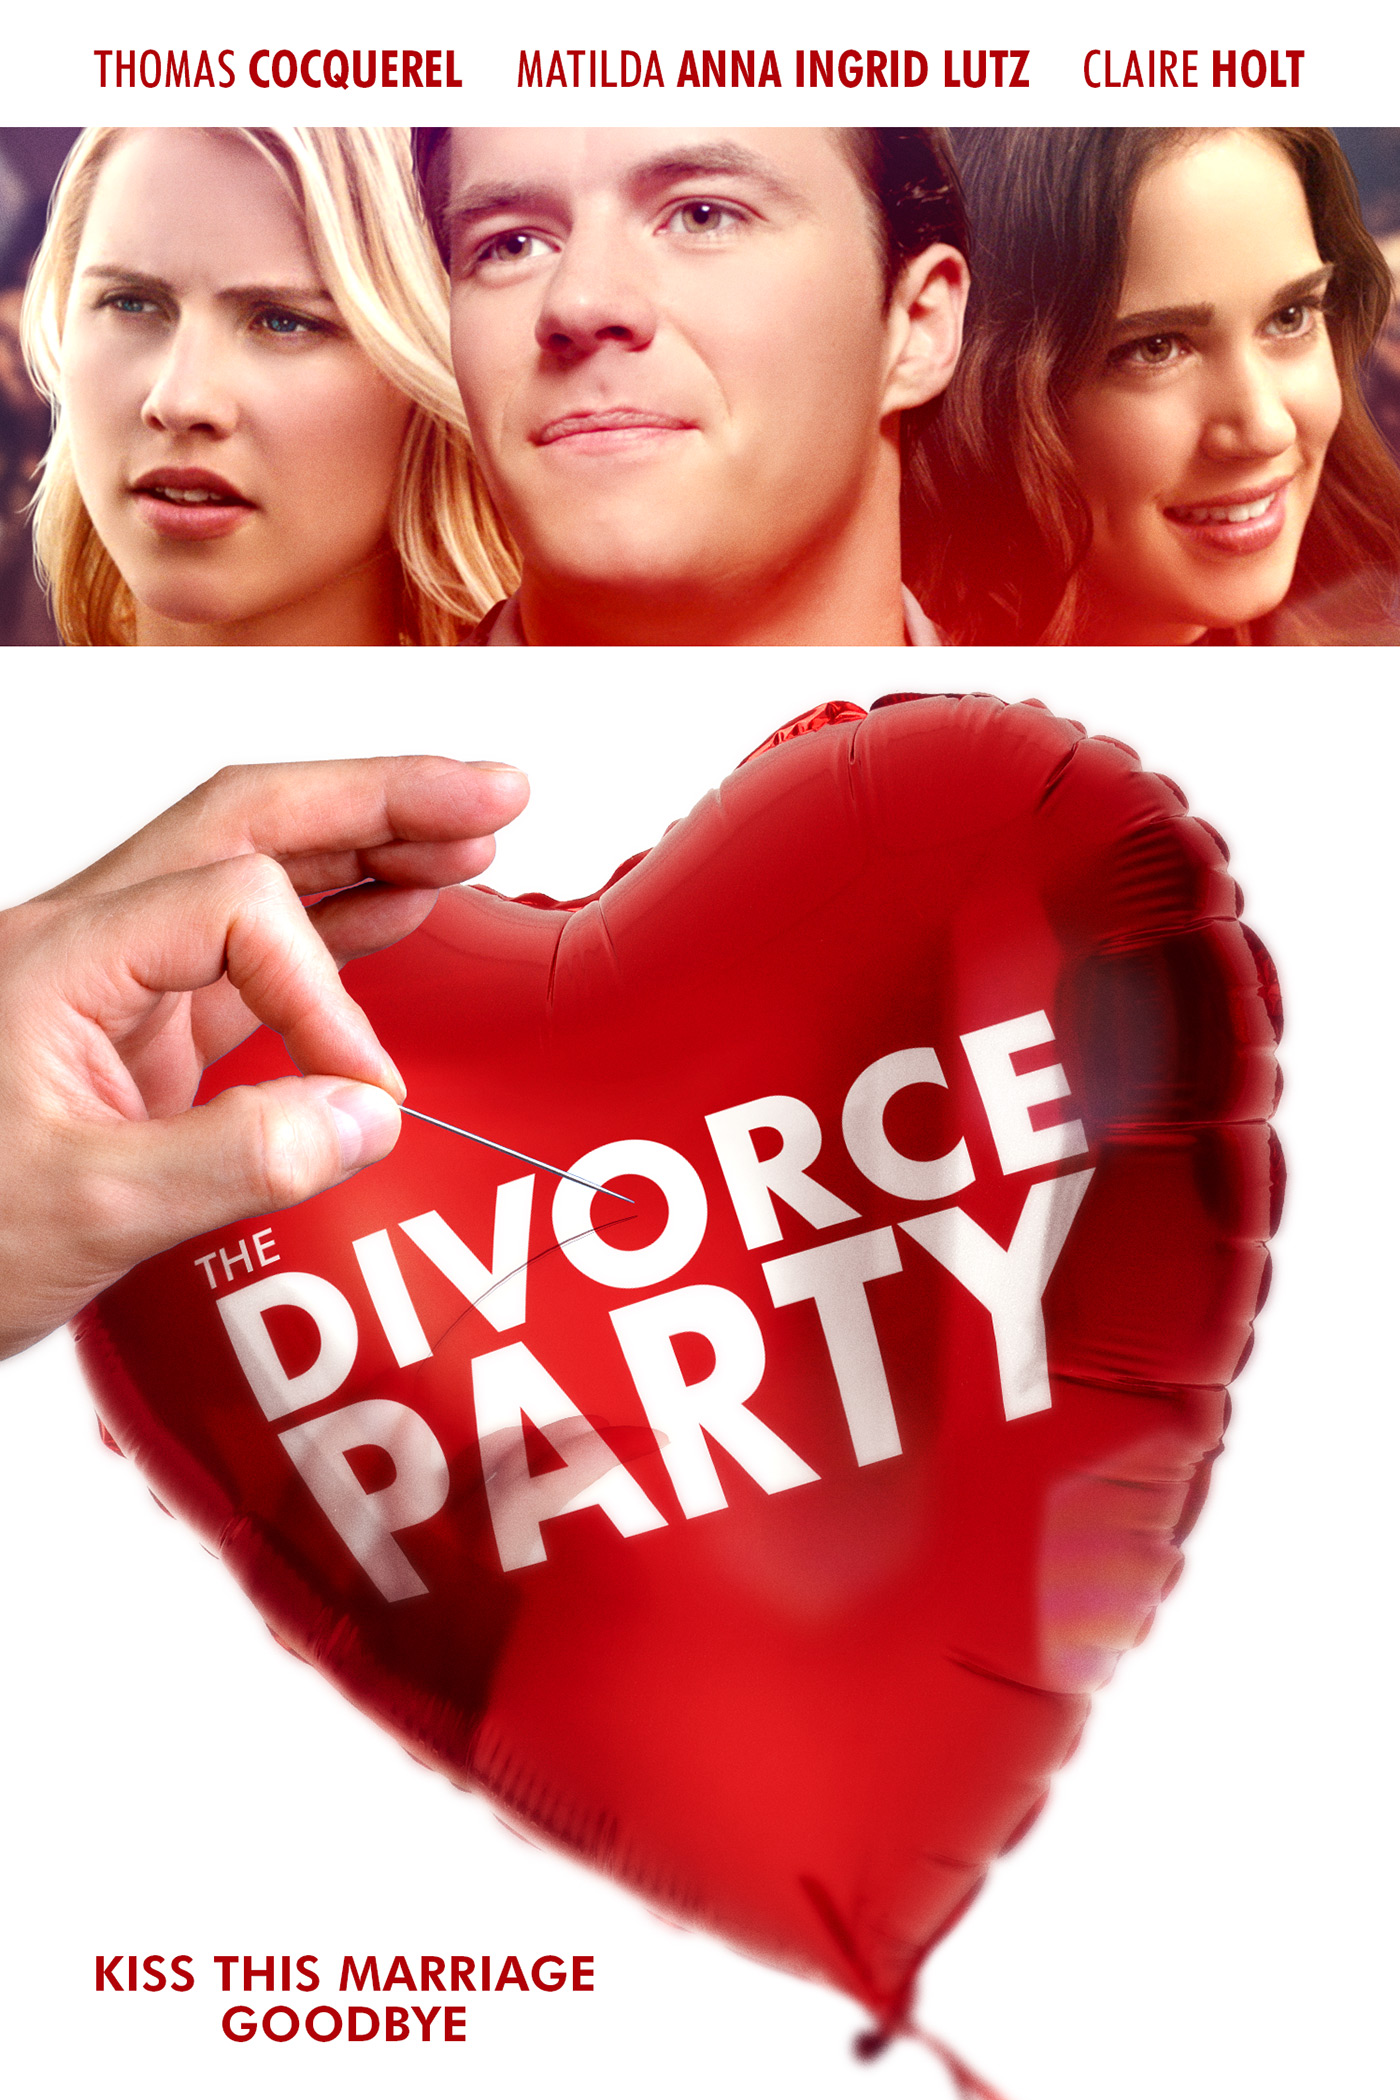 Nonton film The Divorce Party layarkaca21 indoxx1 ganool online streaming terbaru